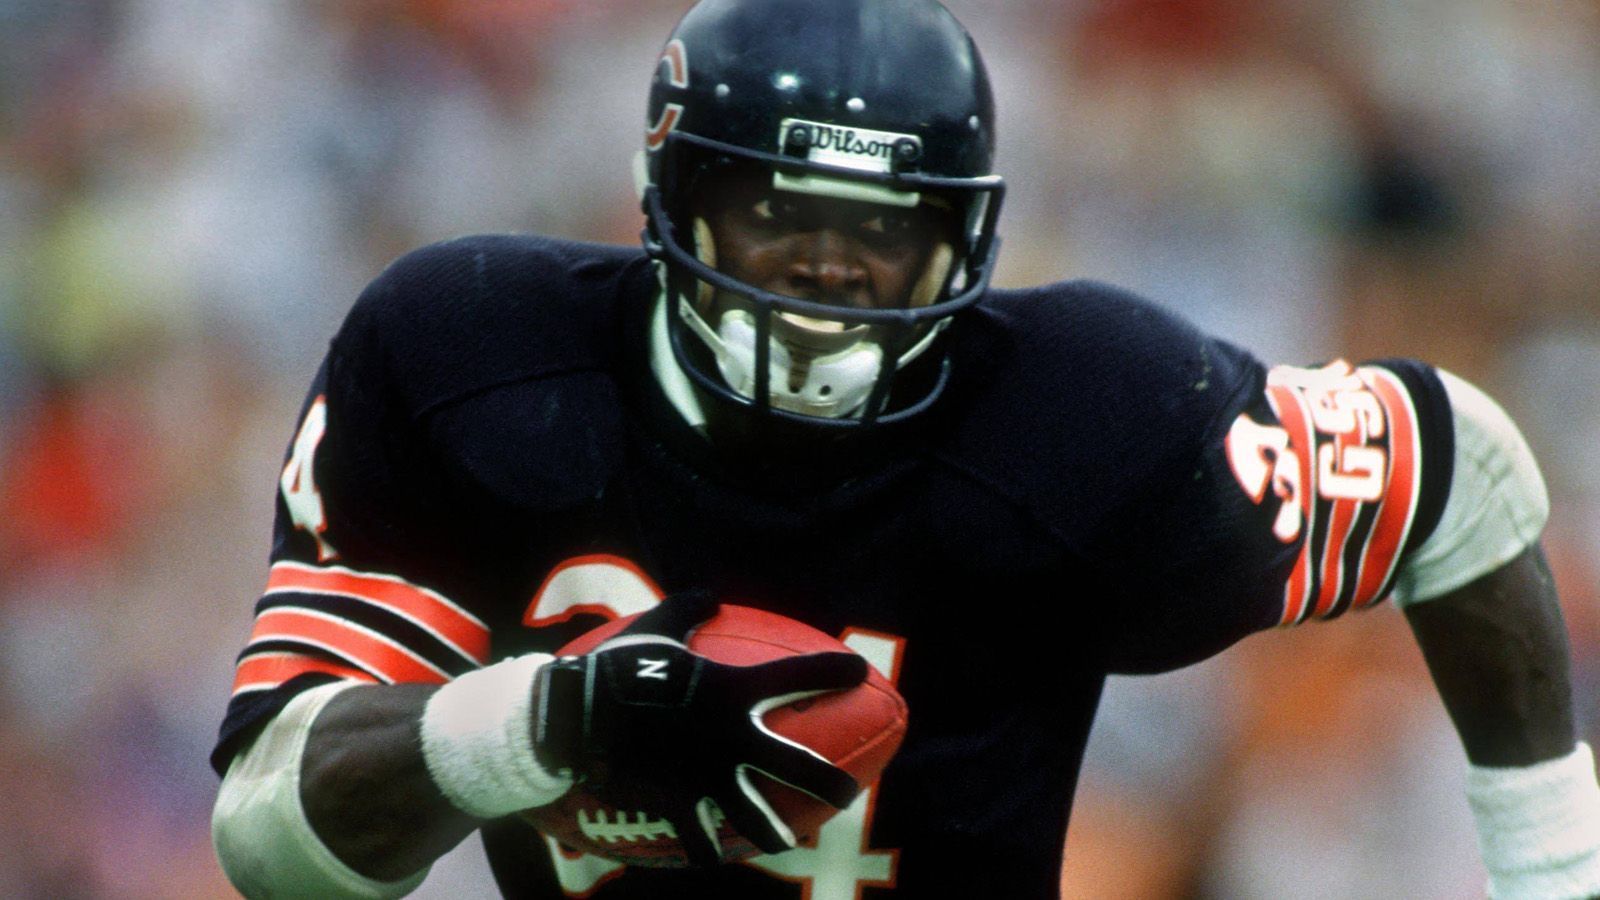 
                <strong>Chicago Bears: Walter Payton (Running Back) </strong><br>
                Payton wird oft als einer der besten Running Backs aller Zeiten betrachtet und war ein Eckpfeiler der legendären Bears-Teams der 1980er Jahre.
              